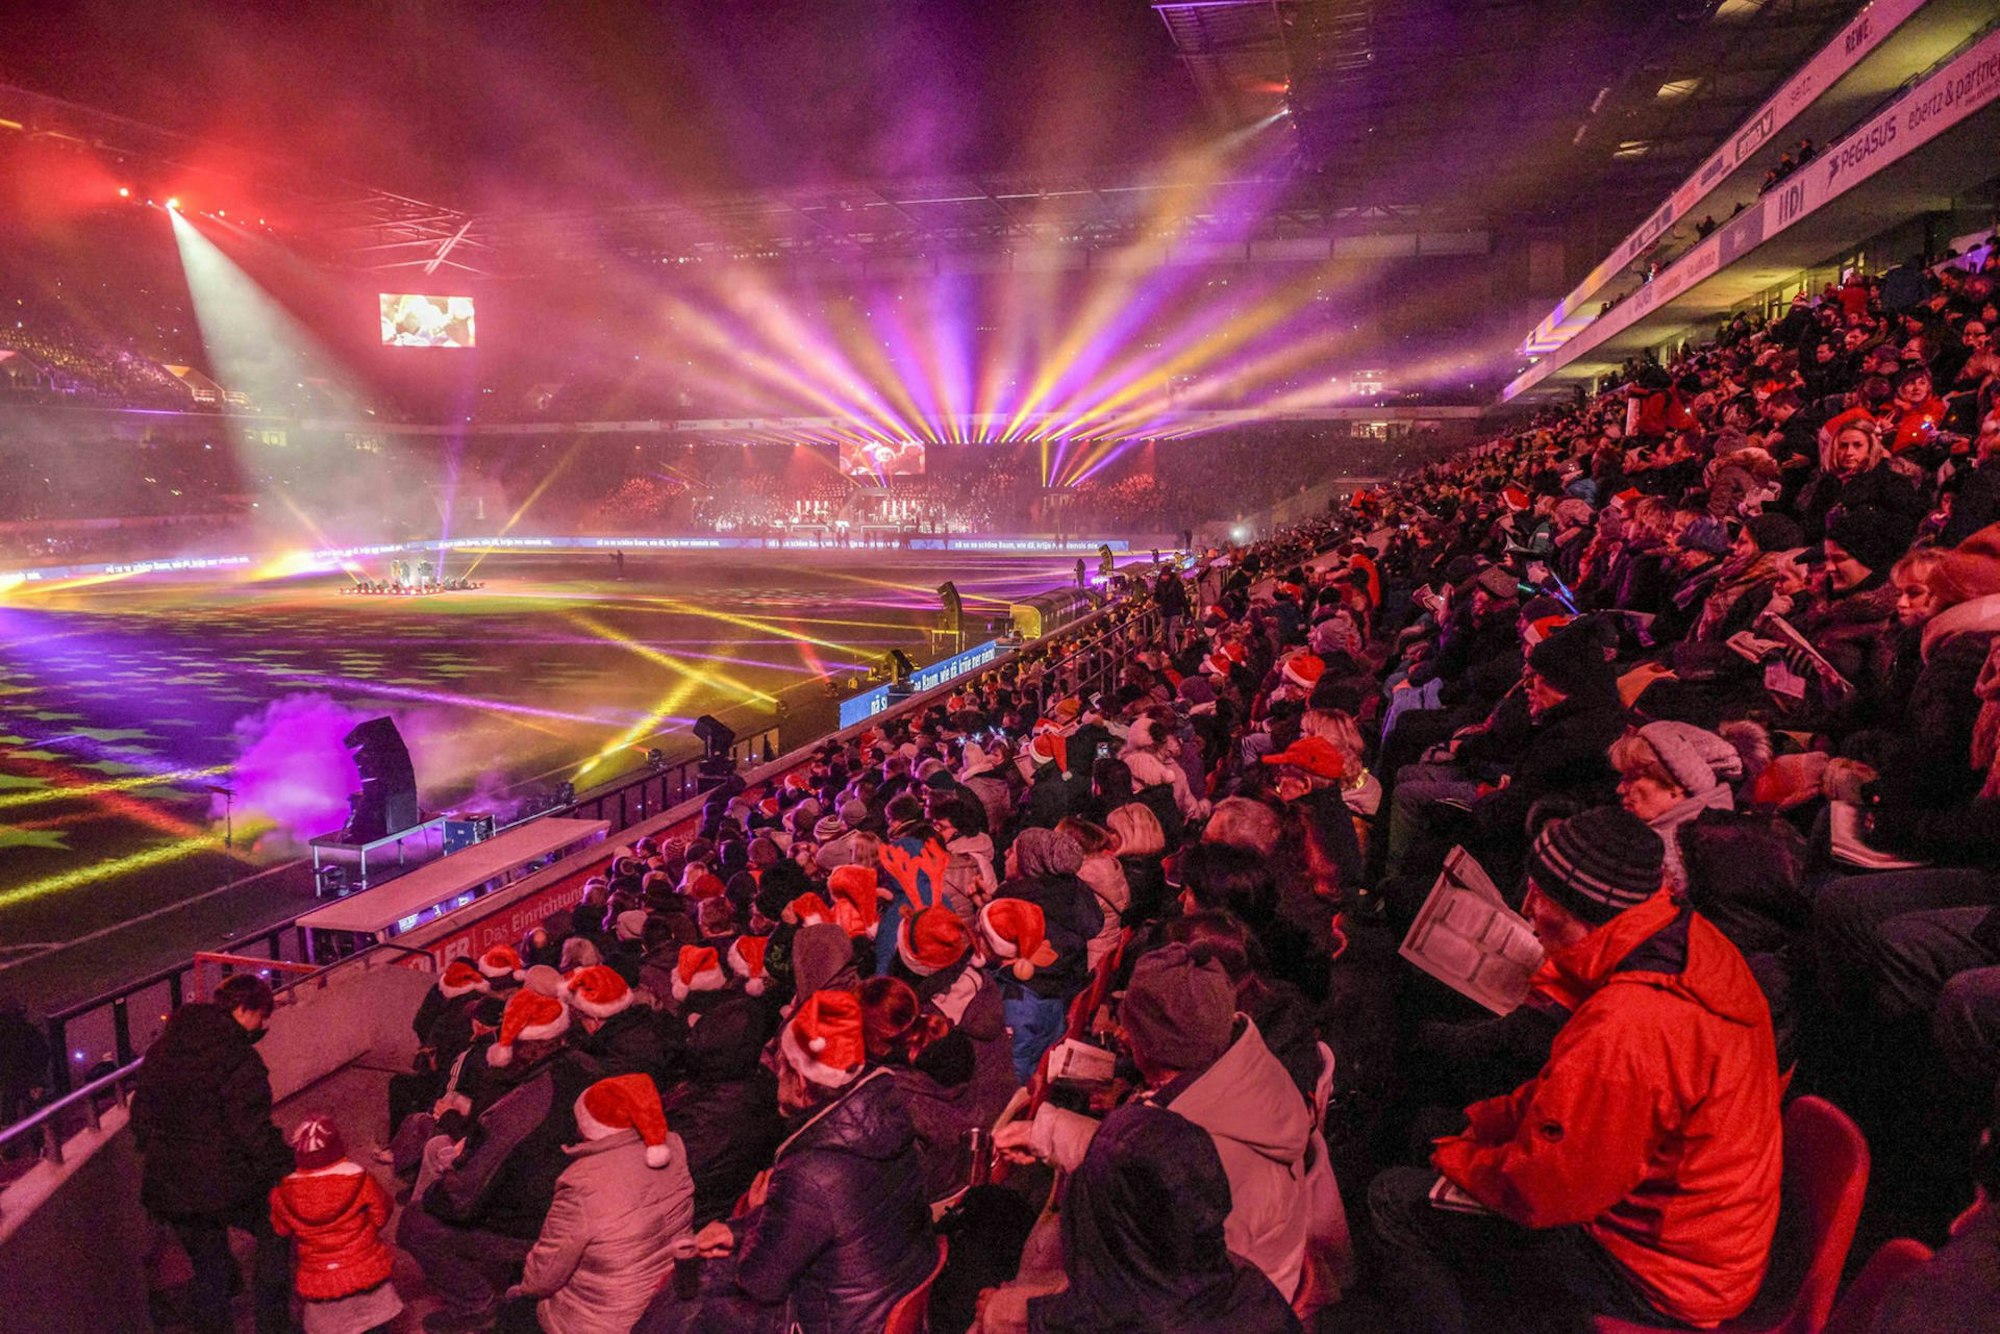 Das Weihnachtssingen im Rhein-Energie-Stadion, bereits zur guten Tradition in Köln geworden, findet in diesem Jahr wieder statt.